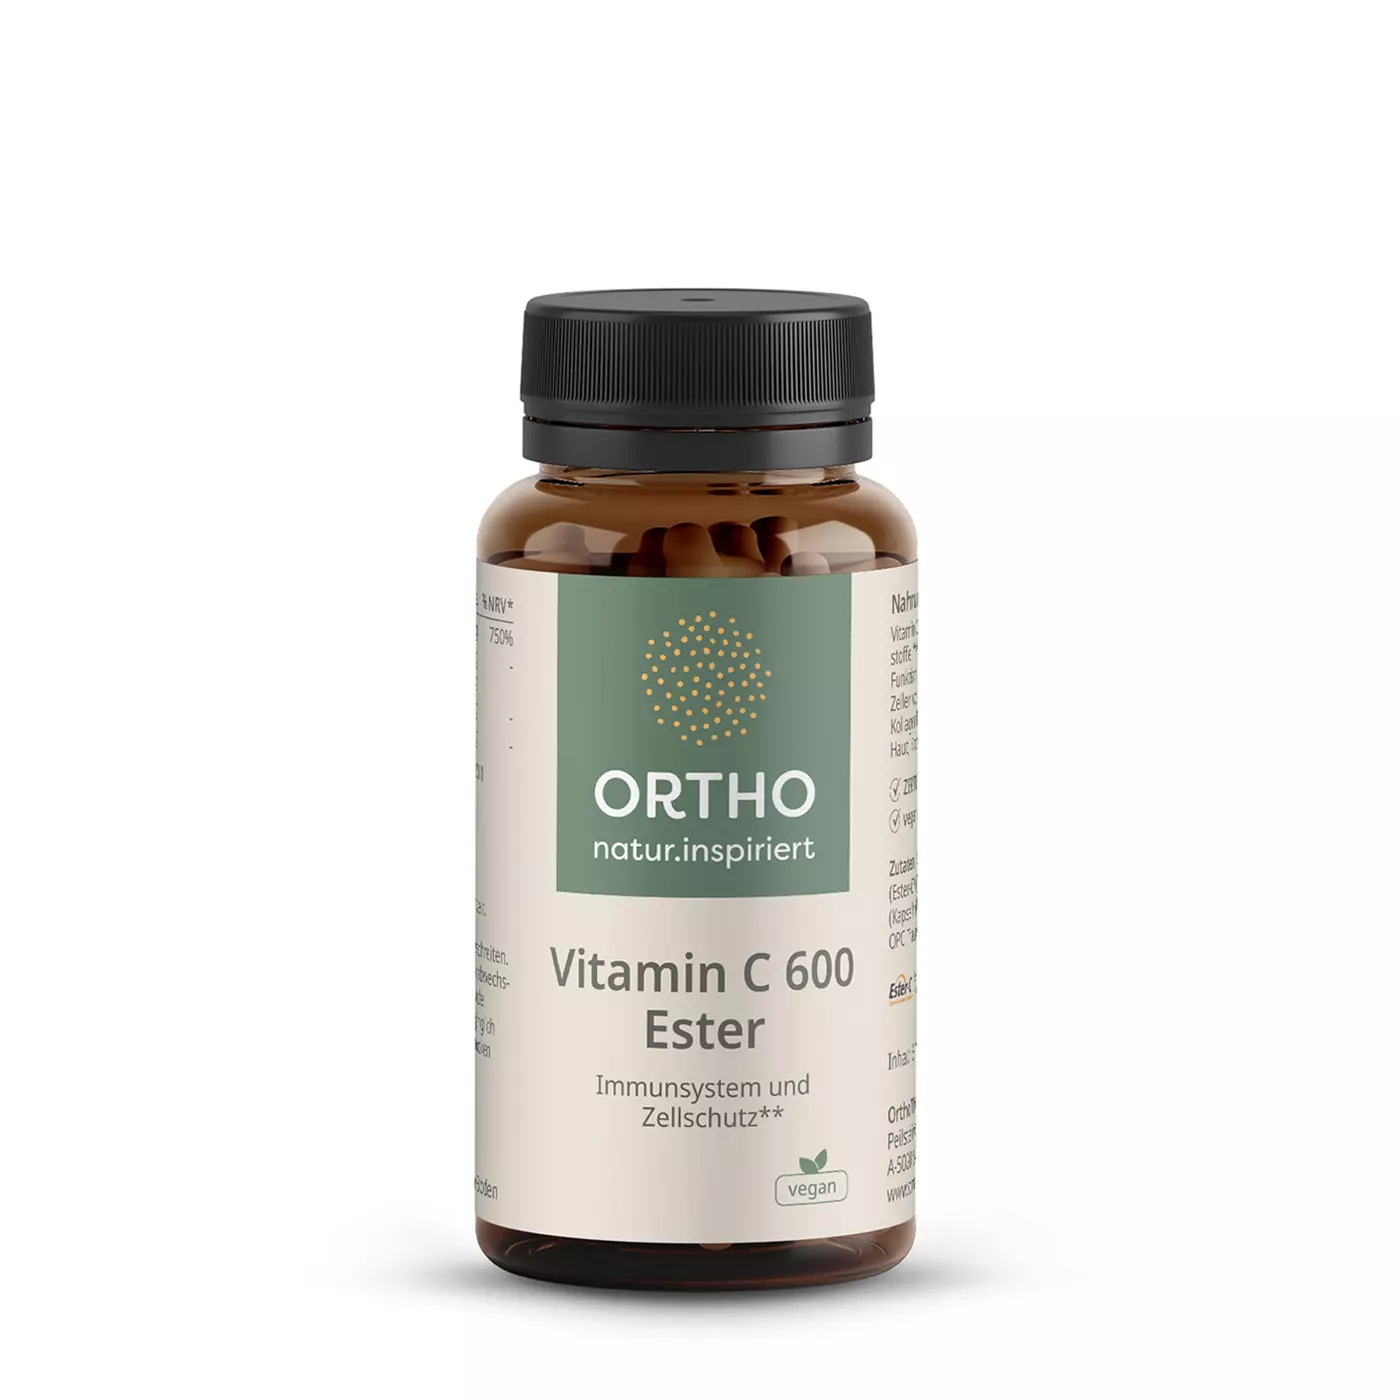 OrthoTherapia Vitamin C 600 Ester